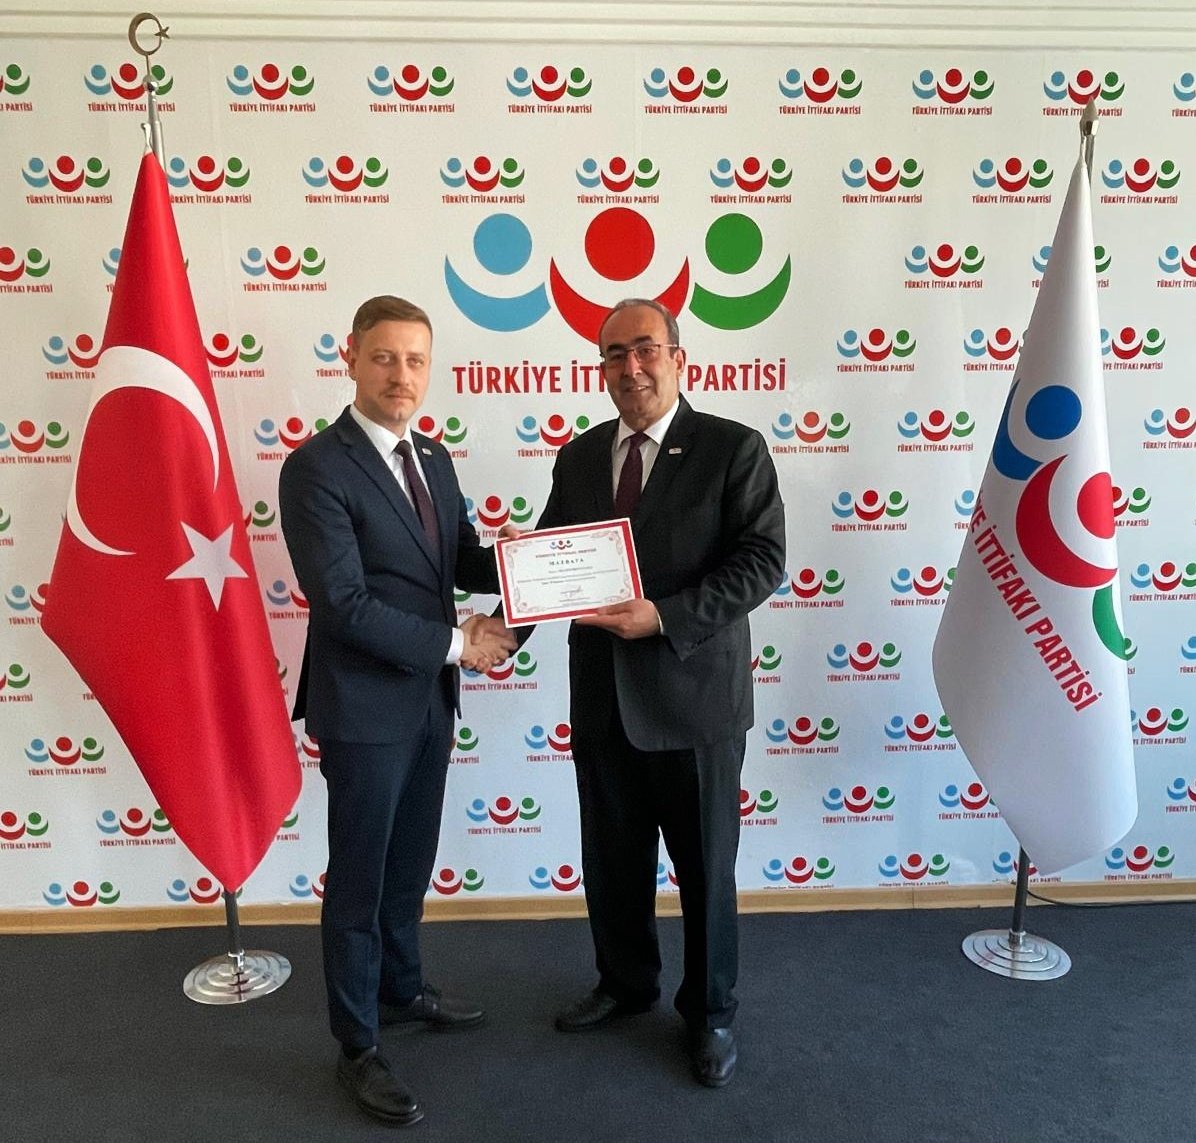 İzmir il başkanlığı görevine atanan Sayın Seçkin Boyunağa'ya @BoyunagaSeckin , mazbatası genel başkan vekilimiz Sayın Enver Türkoğlu tarafından takdim edildi.